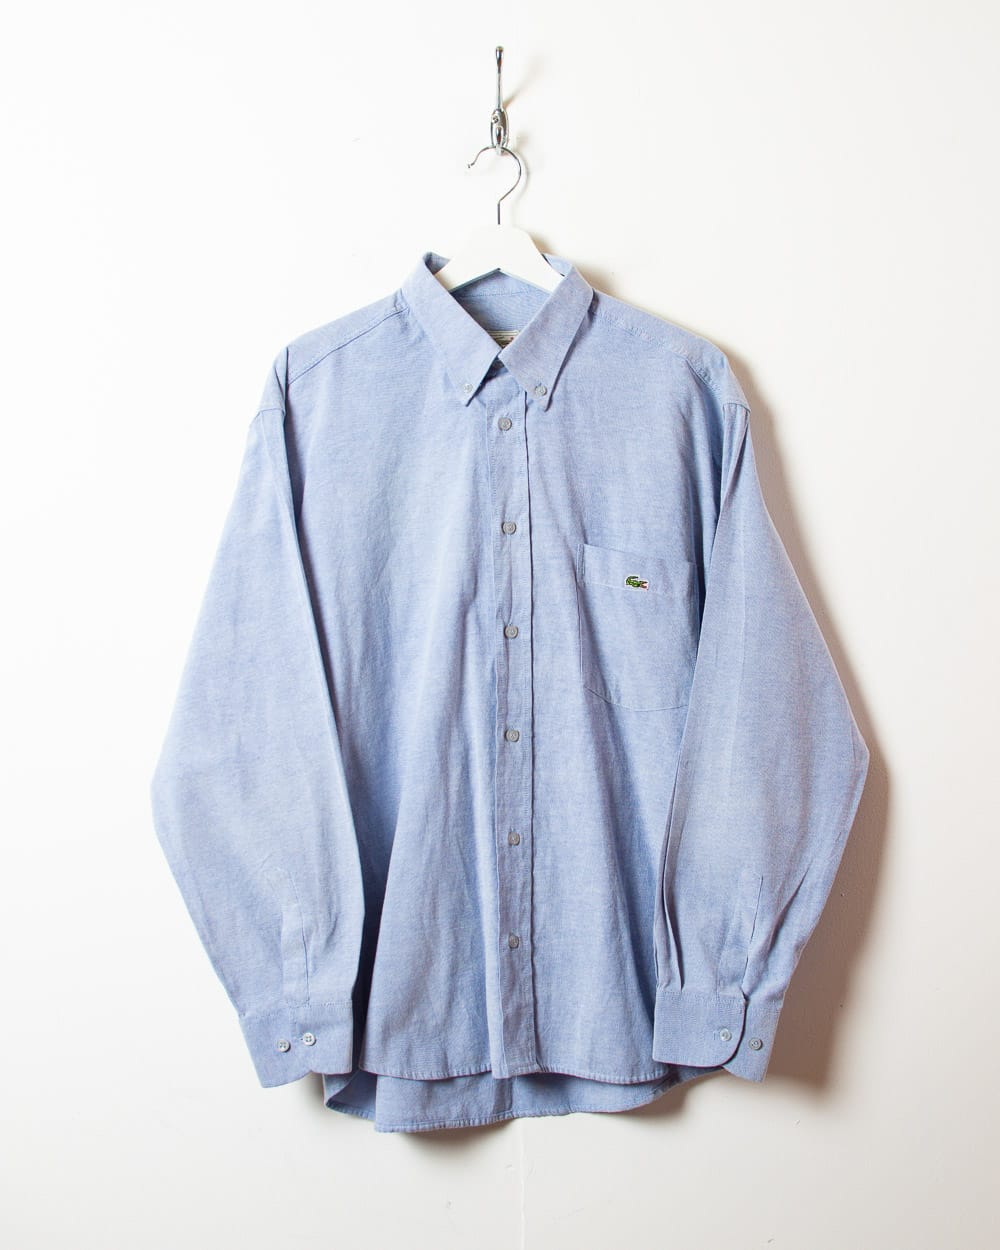 BabyBlue Lacoste Shirt - Large